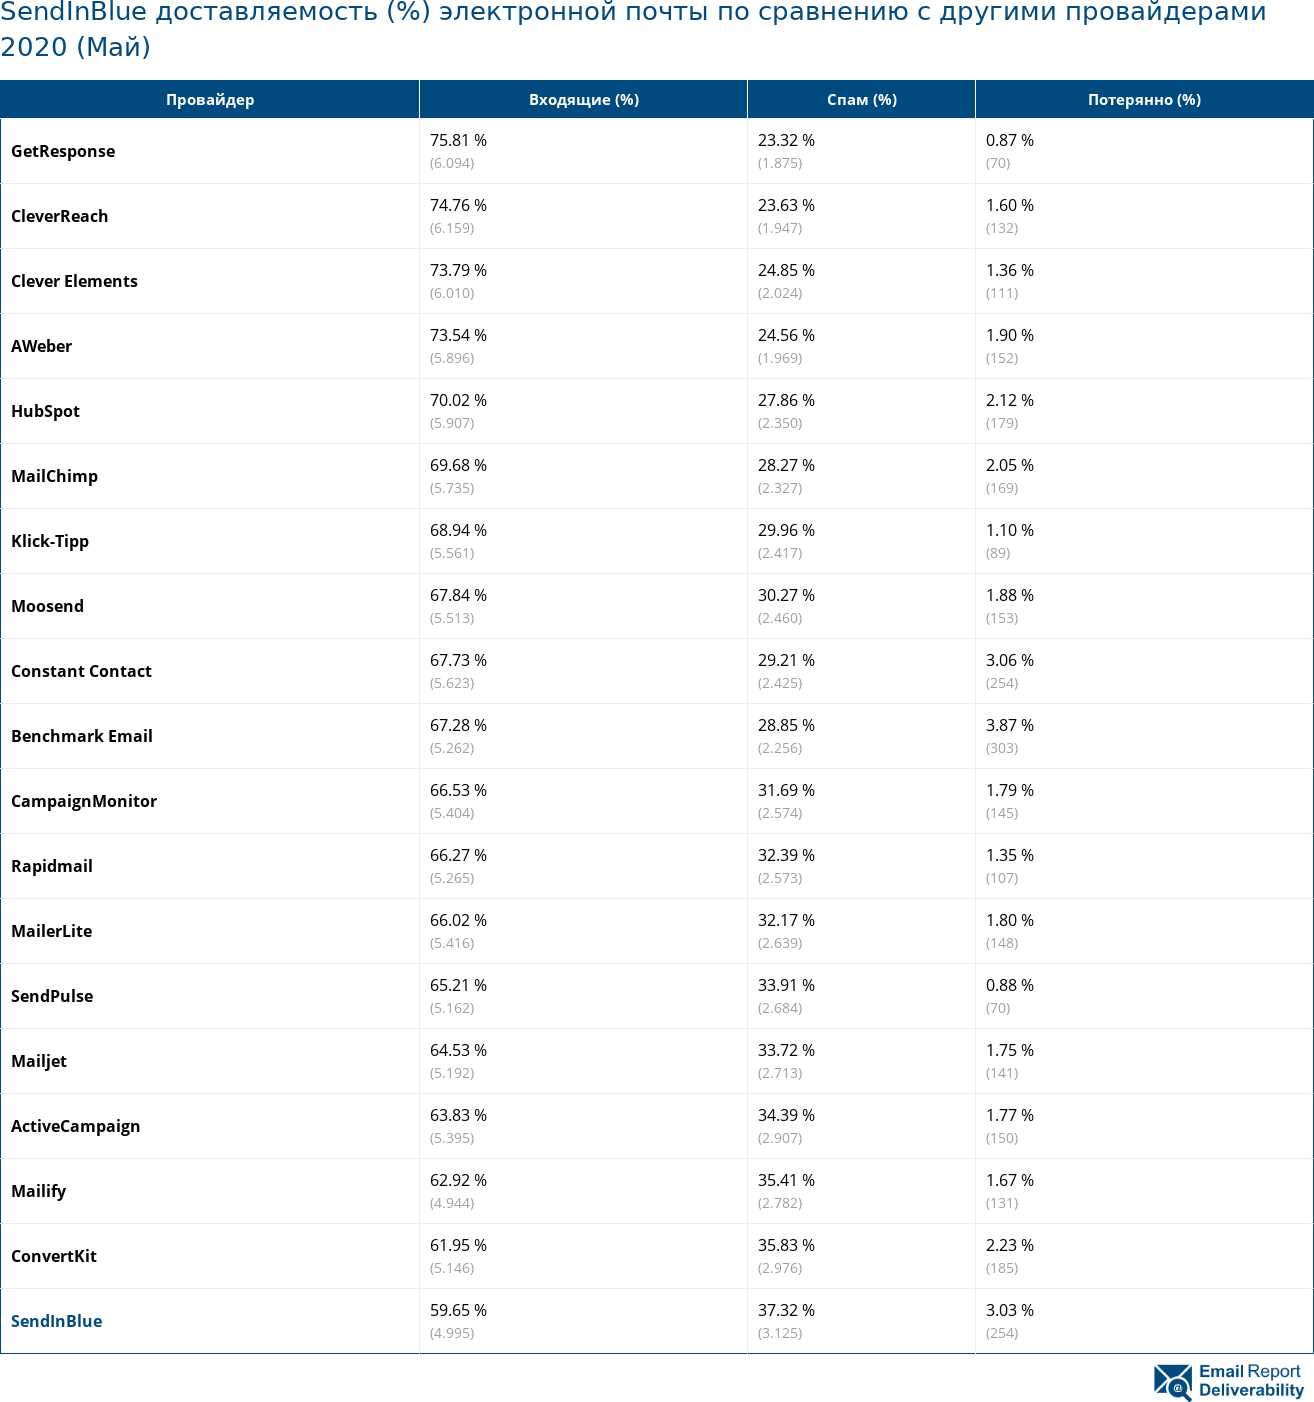 SendInBlue доставляемость (%) электронной почты по сравнению с другими провайдерами 2020 (Май)